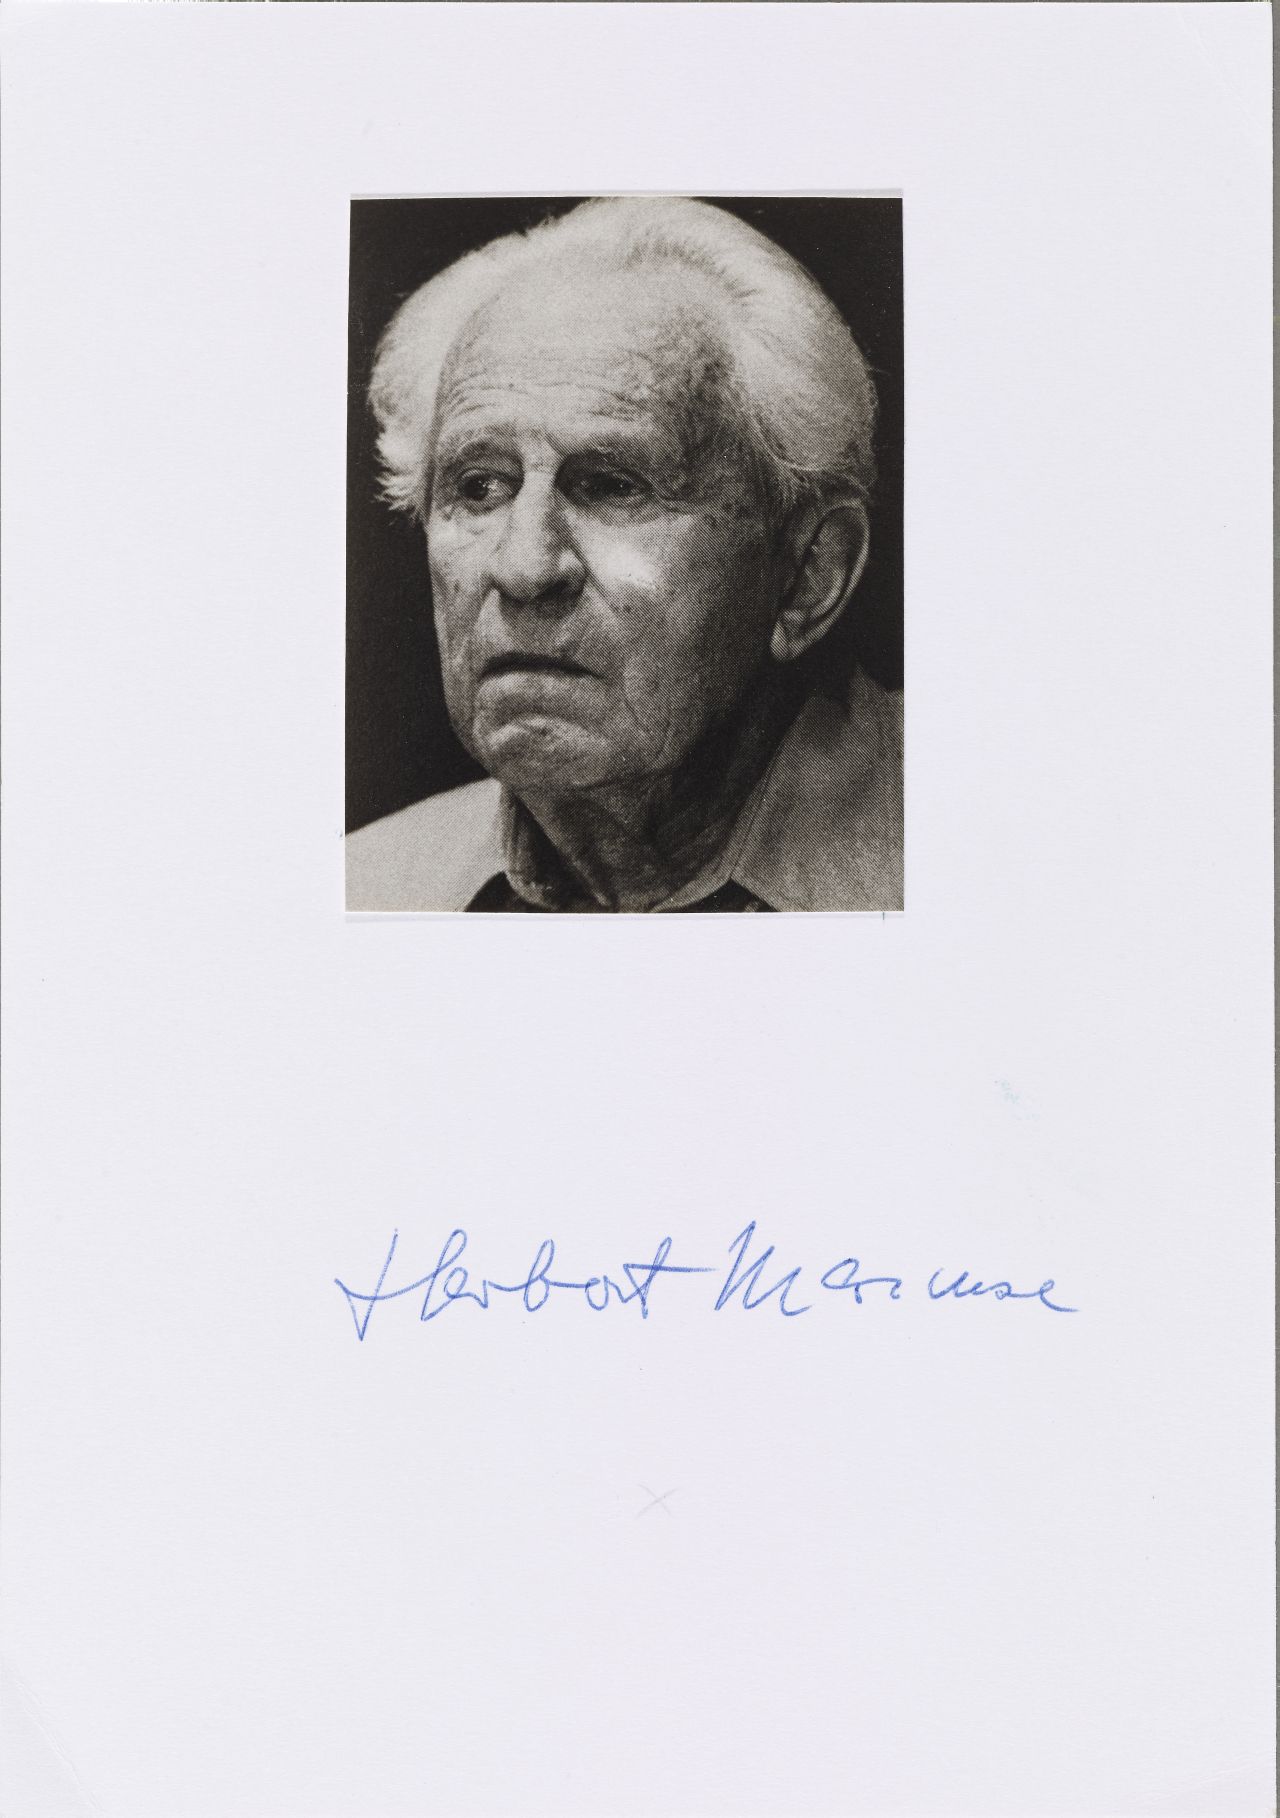 Handsignierte Fotografie von Herbert Marcuse, Philosoph, Politologe und Soziologe, der durch seine Beiträge zur kritischen Theorie zu großer Bekanntheit kommt. 